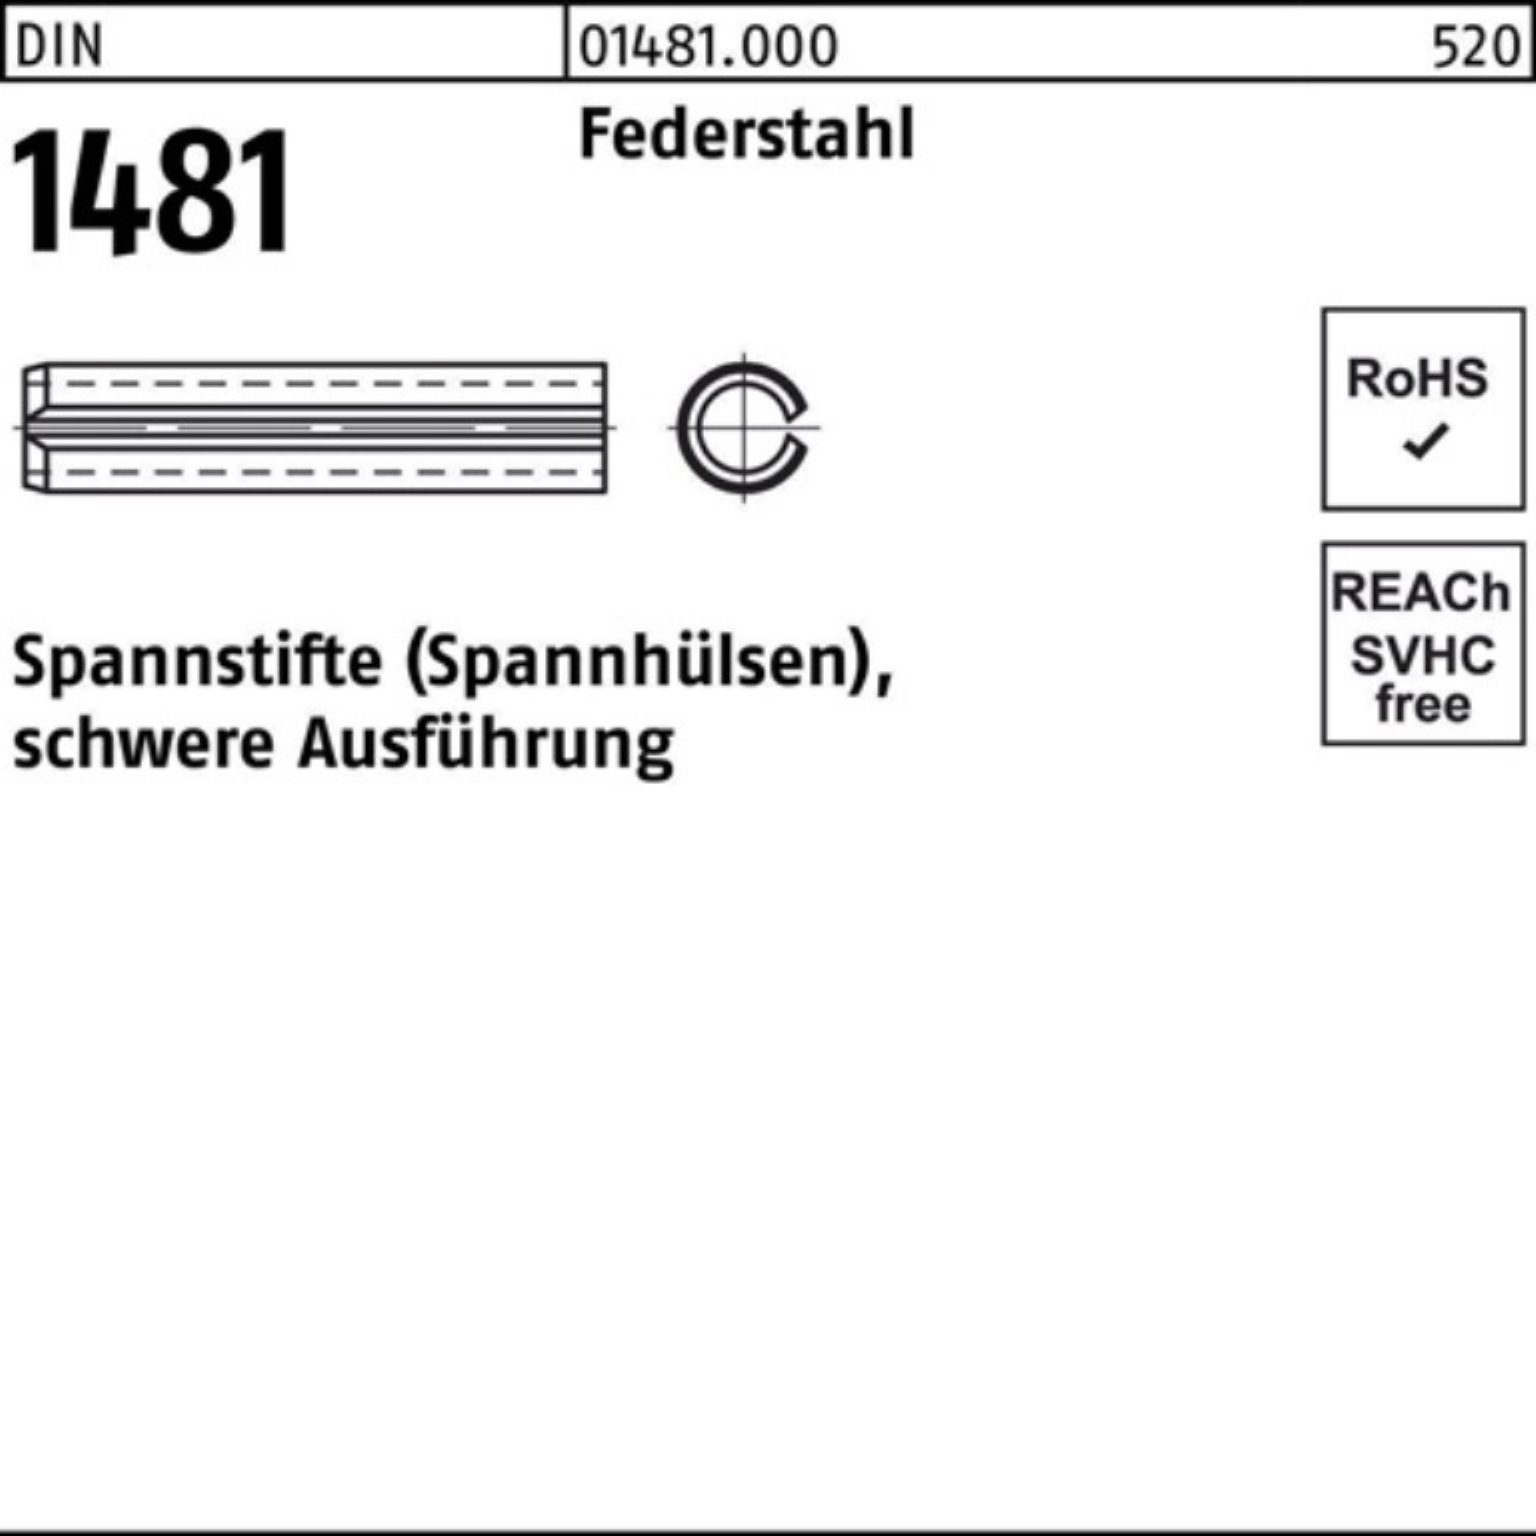 Reyher Spannstift 200er Federstahl schwere 20 Ausführung DIN 16 Pack Spannstift 1481 3x